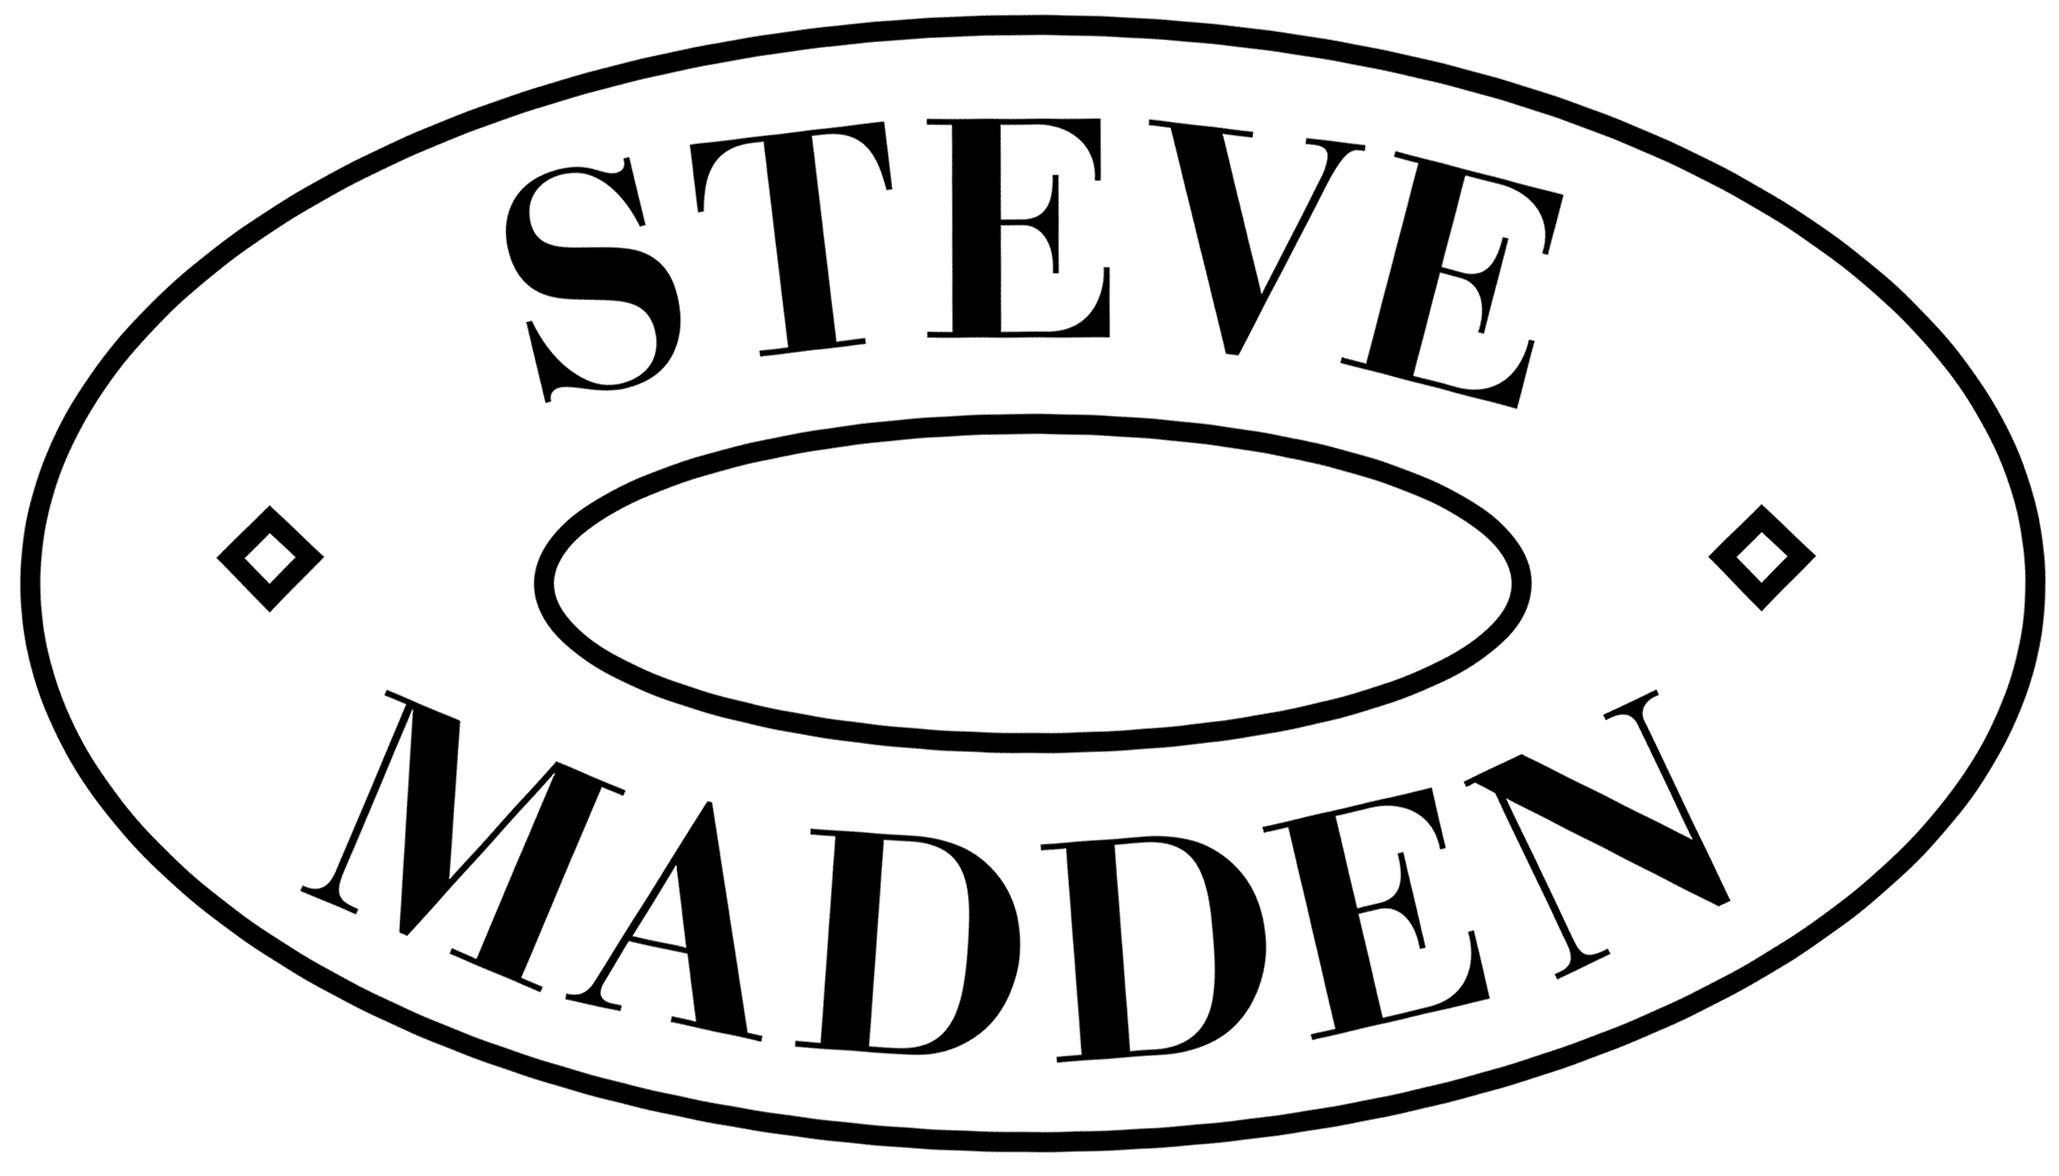 Steve-madden-Logo.jpg